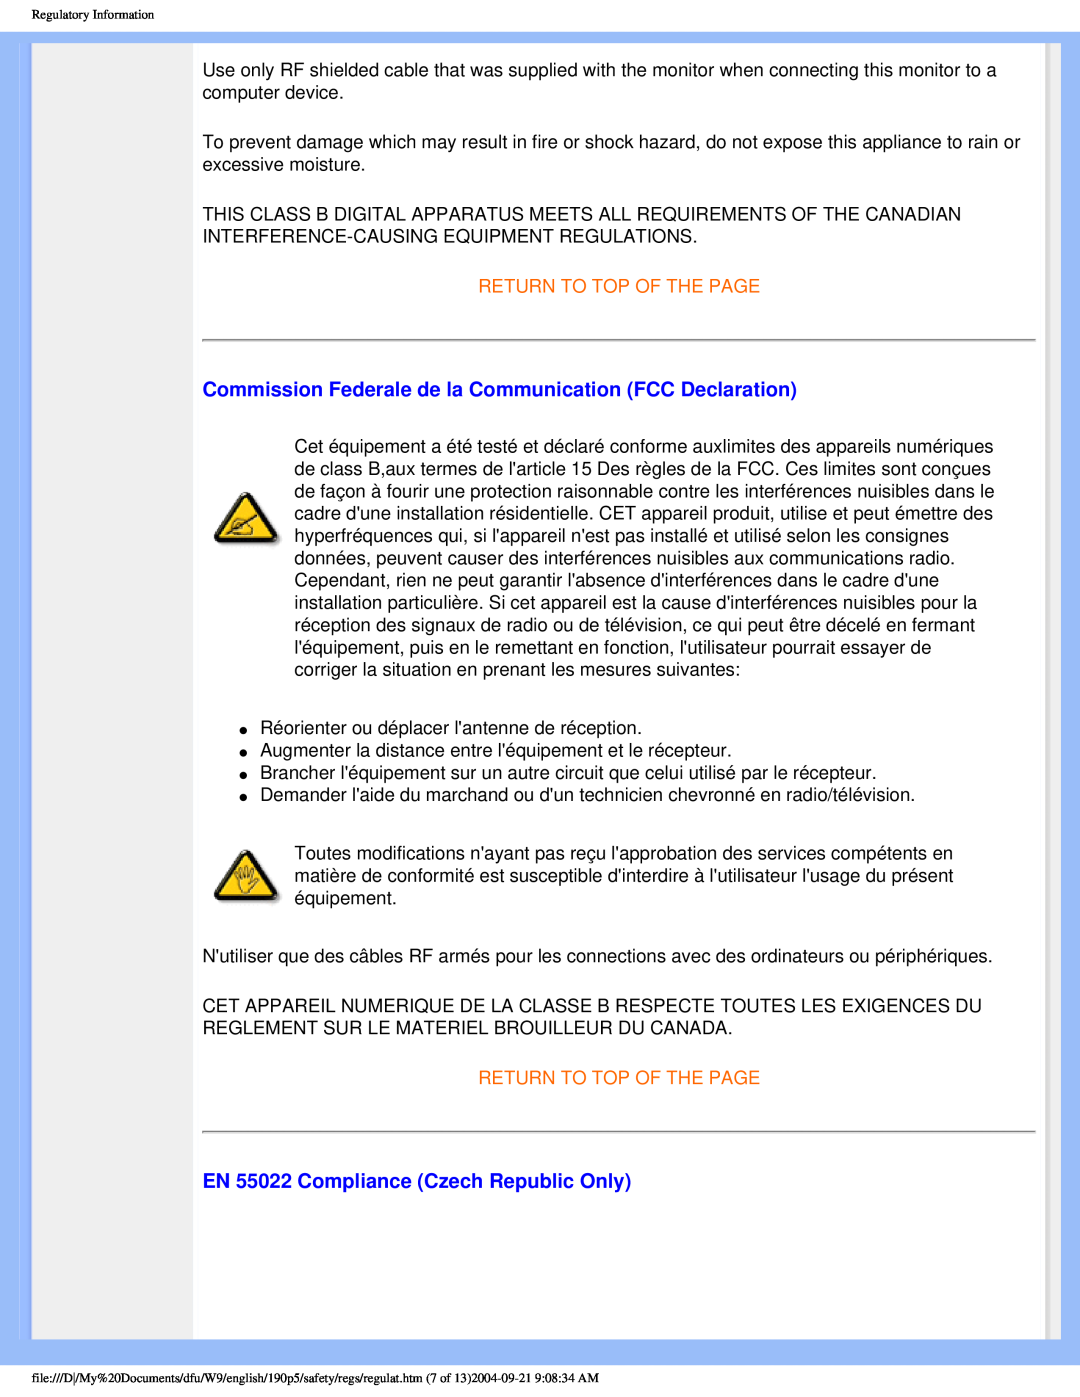 Philips 190PS user manual Commission Federale de la Communication FCC Declaration, EN 55022 Compliance Czech Republic Only 